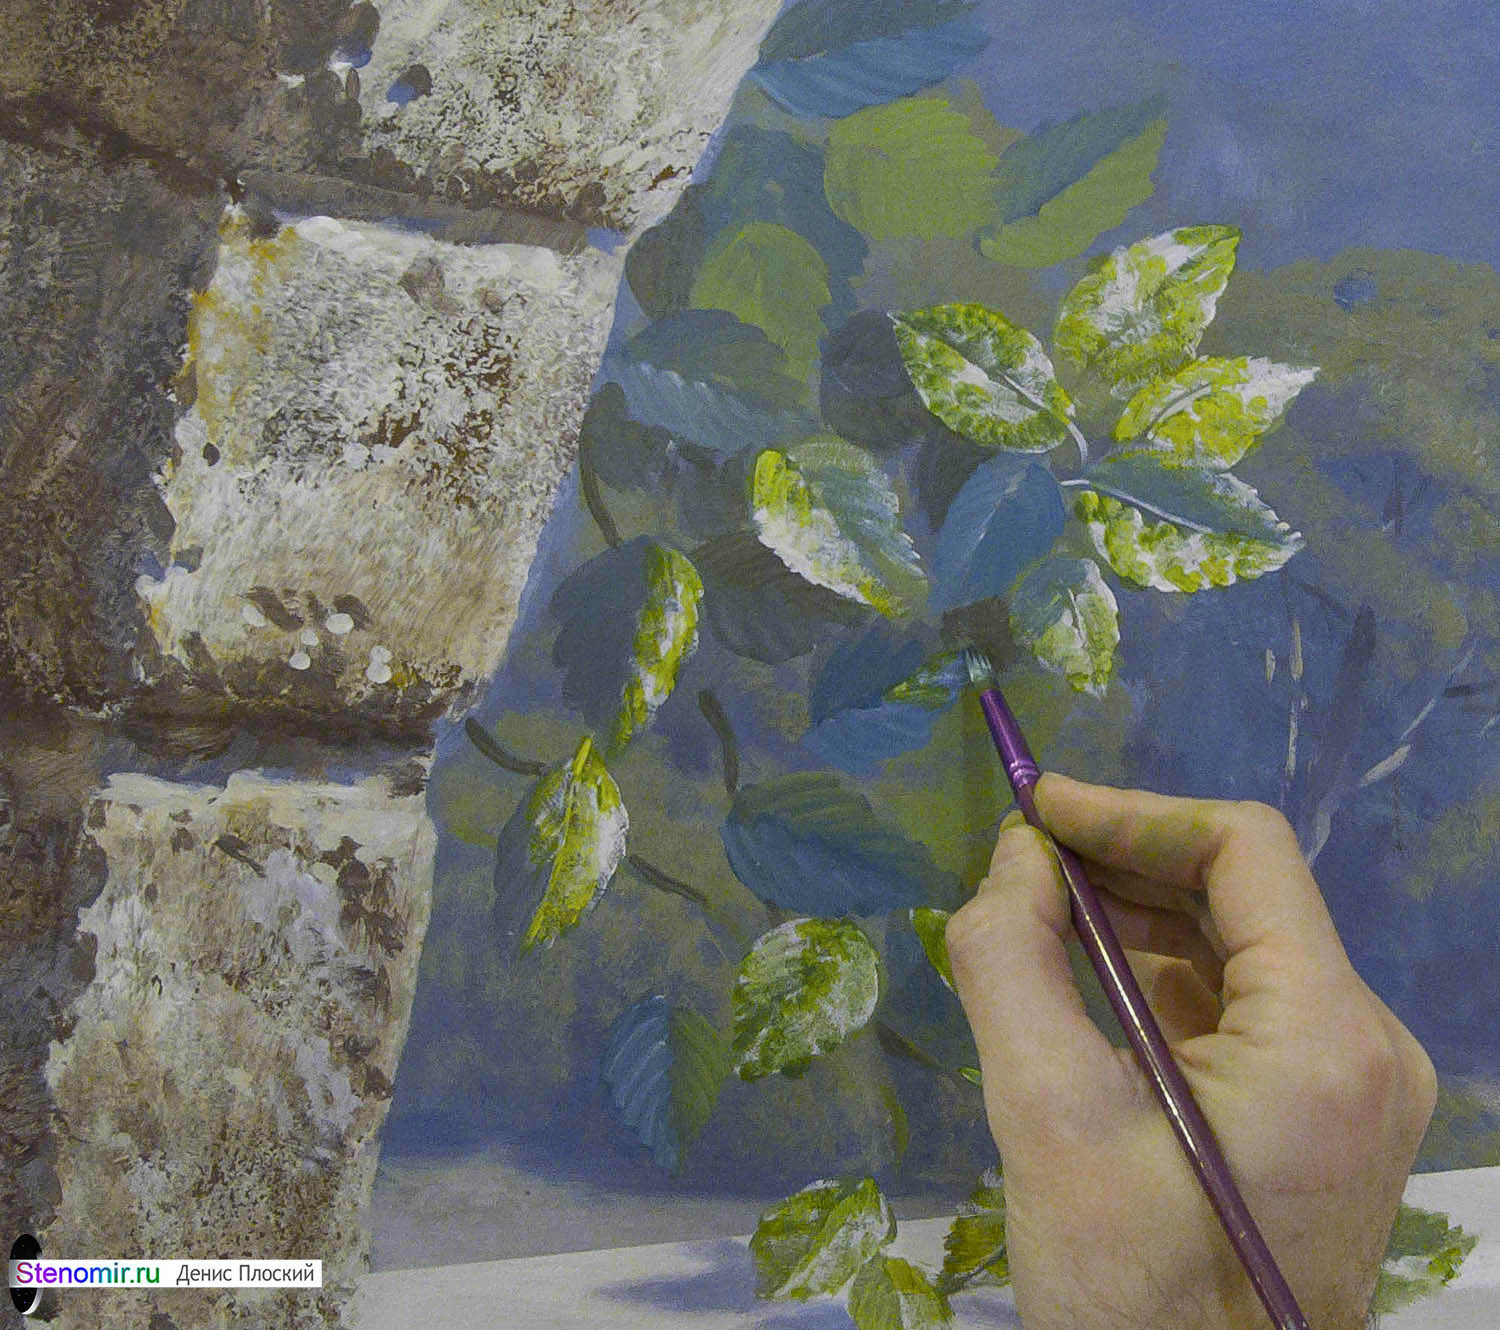 роспись стены с пейзажем - фрагмент с листьями